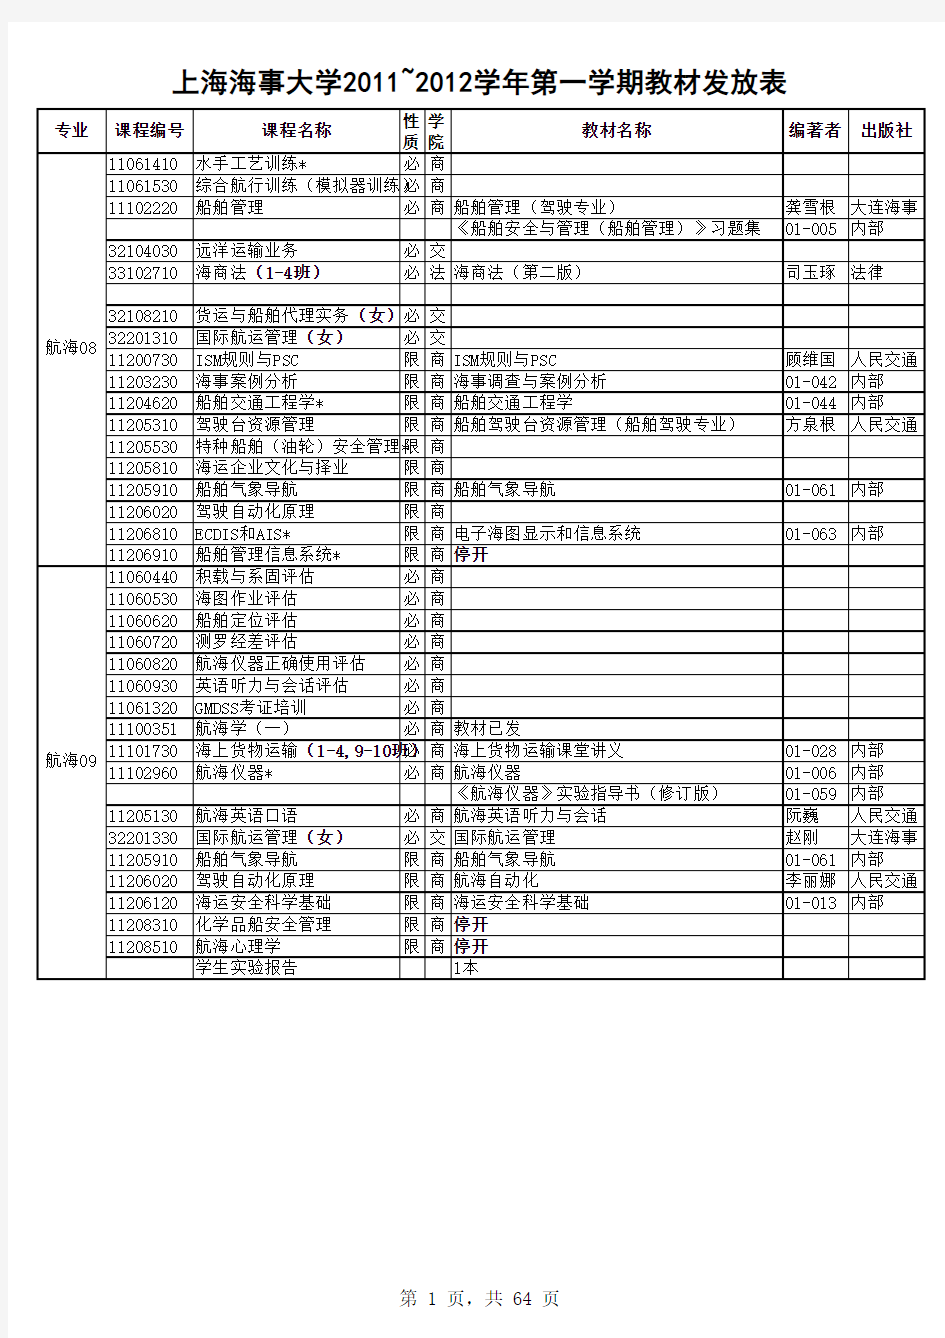 上海海事大学 2011-2012-1教材发放表